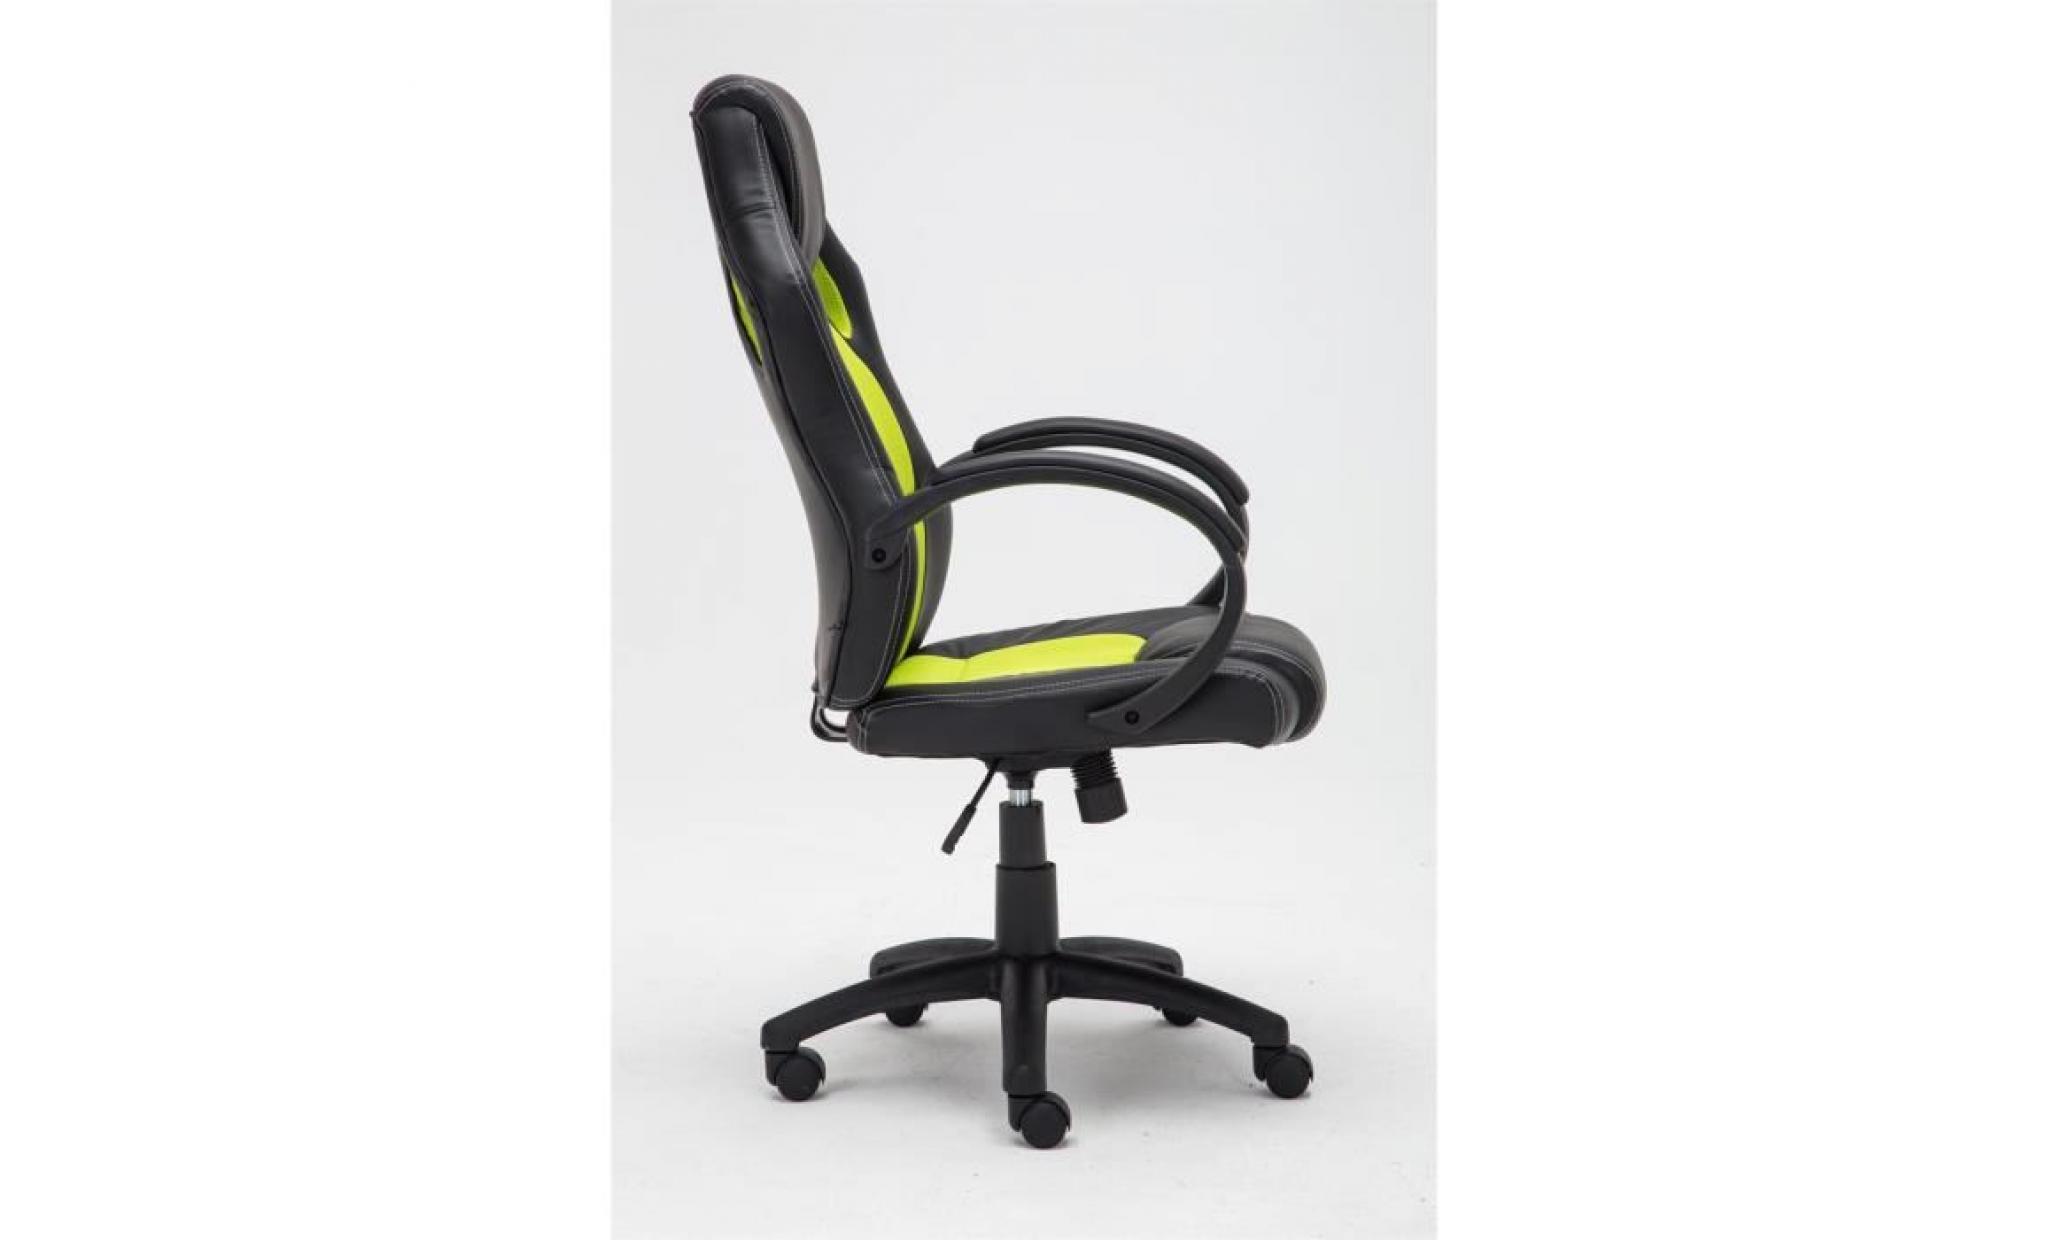 clp fauteuil de bureau fire, chaise bureau ajustable en hauteur de luxe, revêtement en pu, 7 couleurs au choix 110 cm rouge pas cher